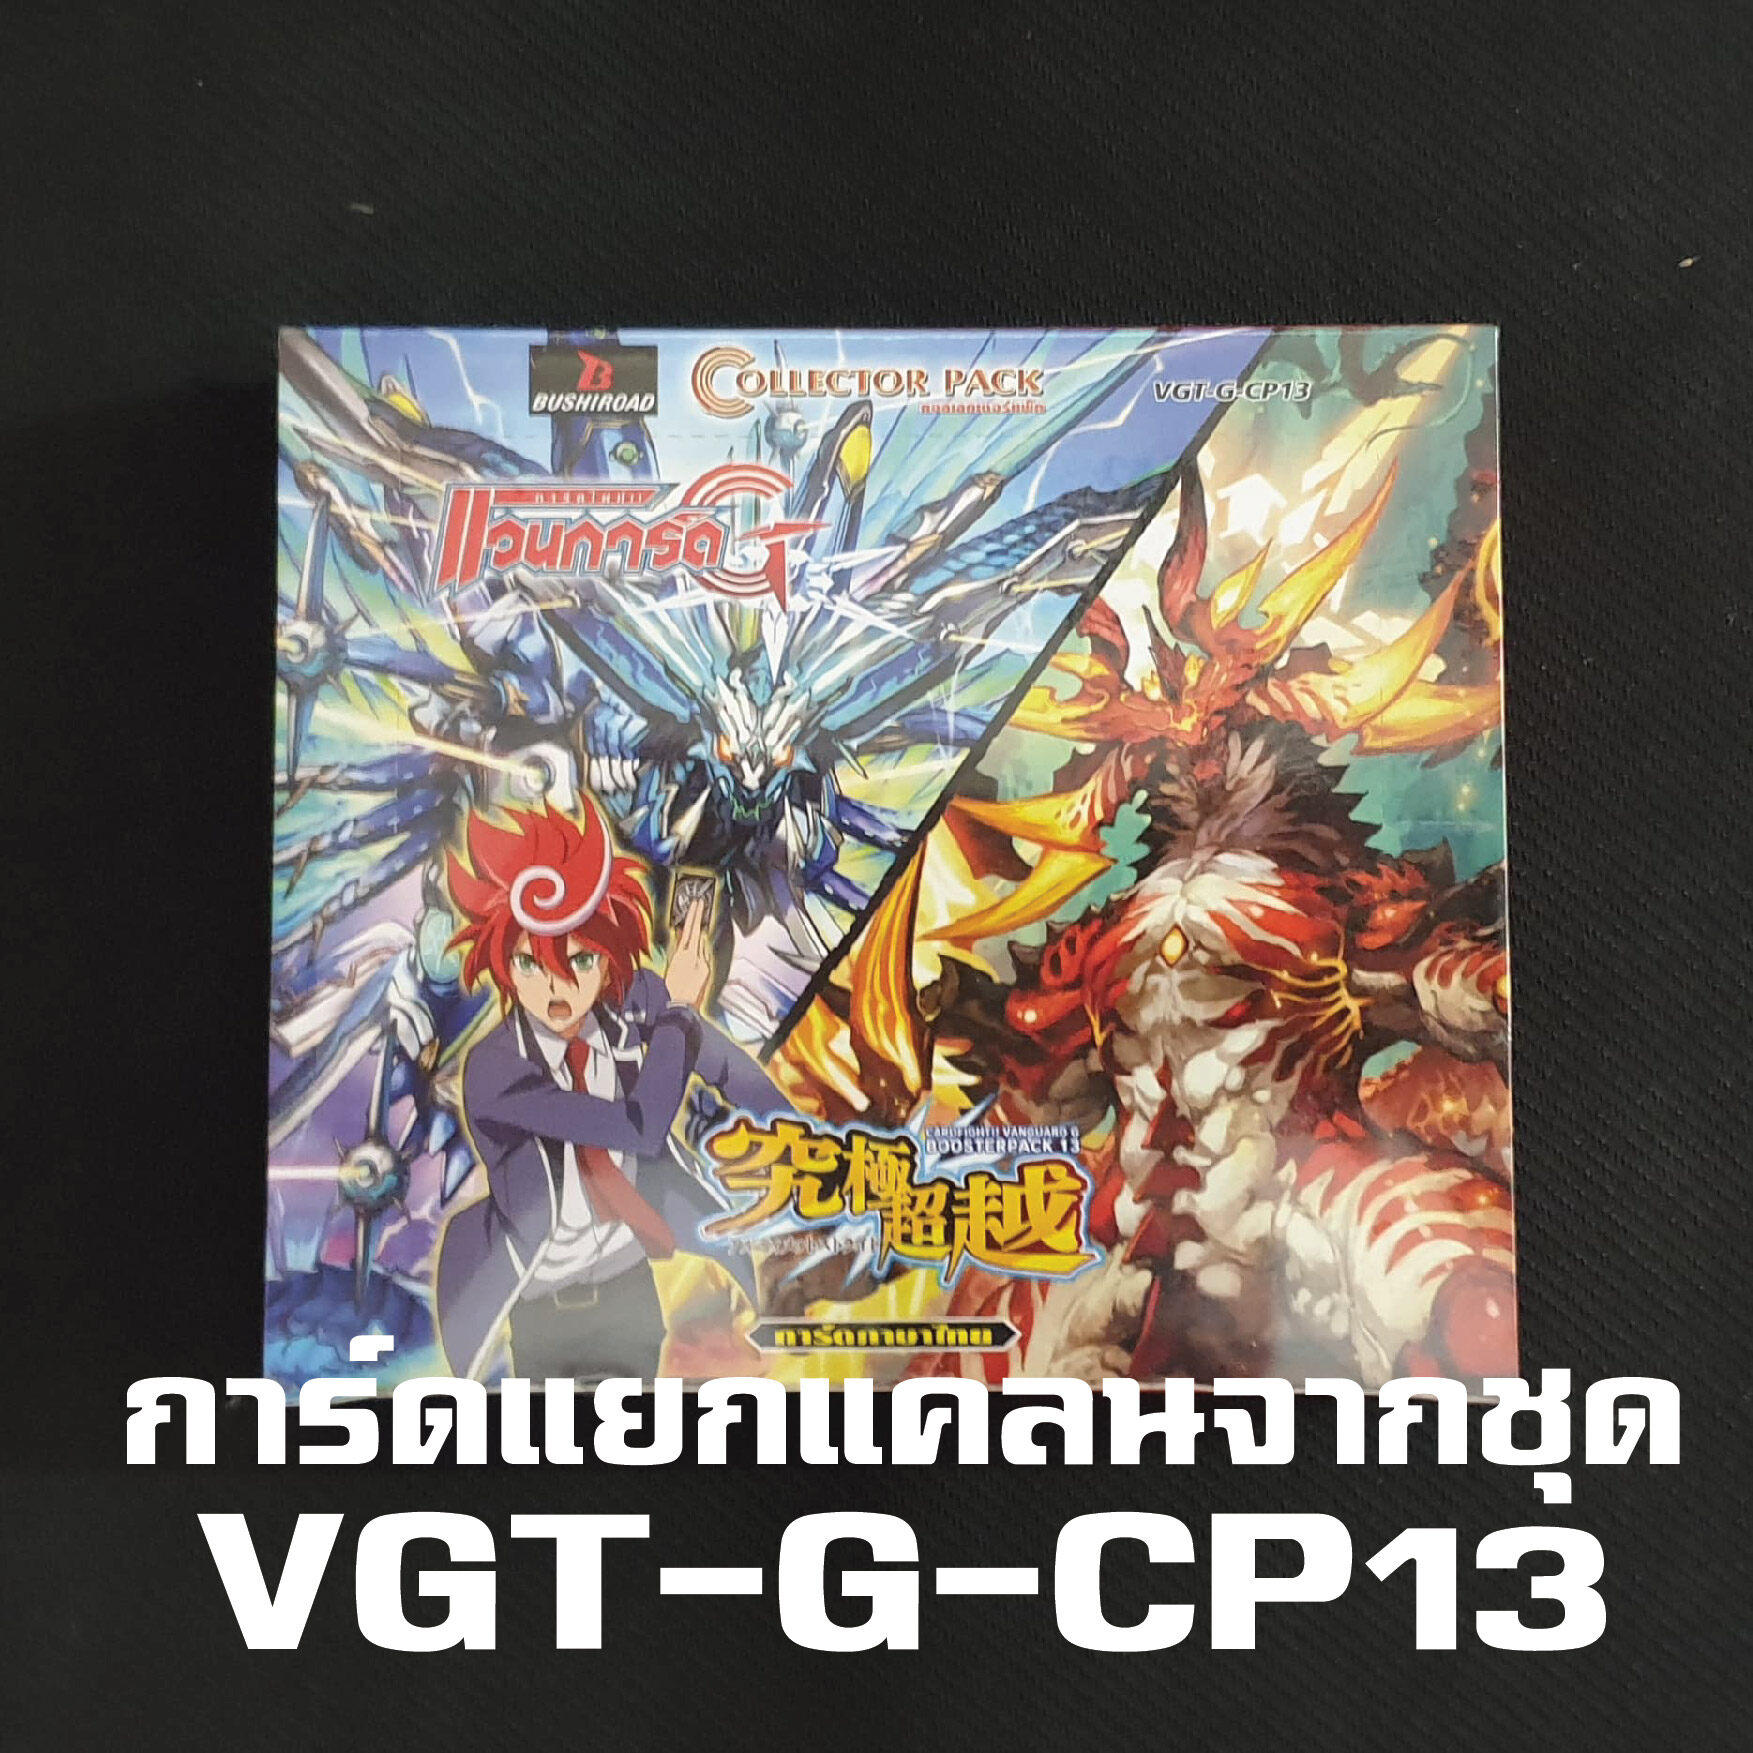 แวนการ์ด แยกแคลน VGT-G-CP13 สไปค์ บราเธอร์ส แวนการ์ด G Vanguard Spike brother การ์ด ฟรอย ทุกใบ